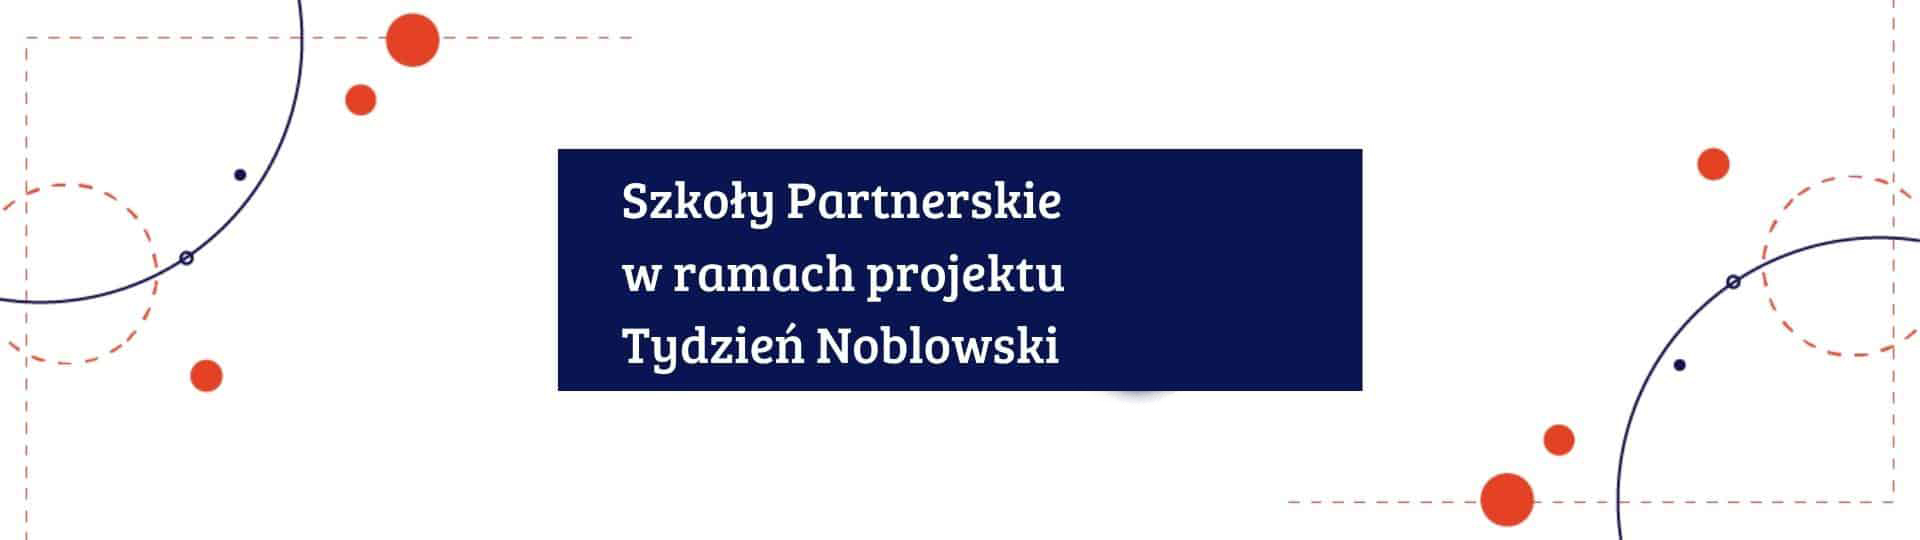 Szkoły Partnerskie w ramach projektu Tydzień Noblowski (1